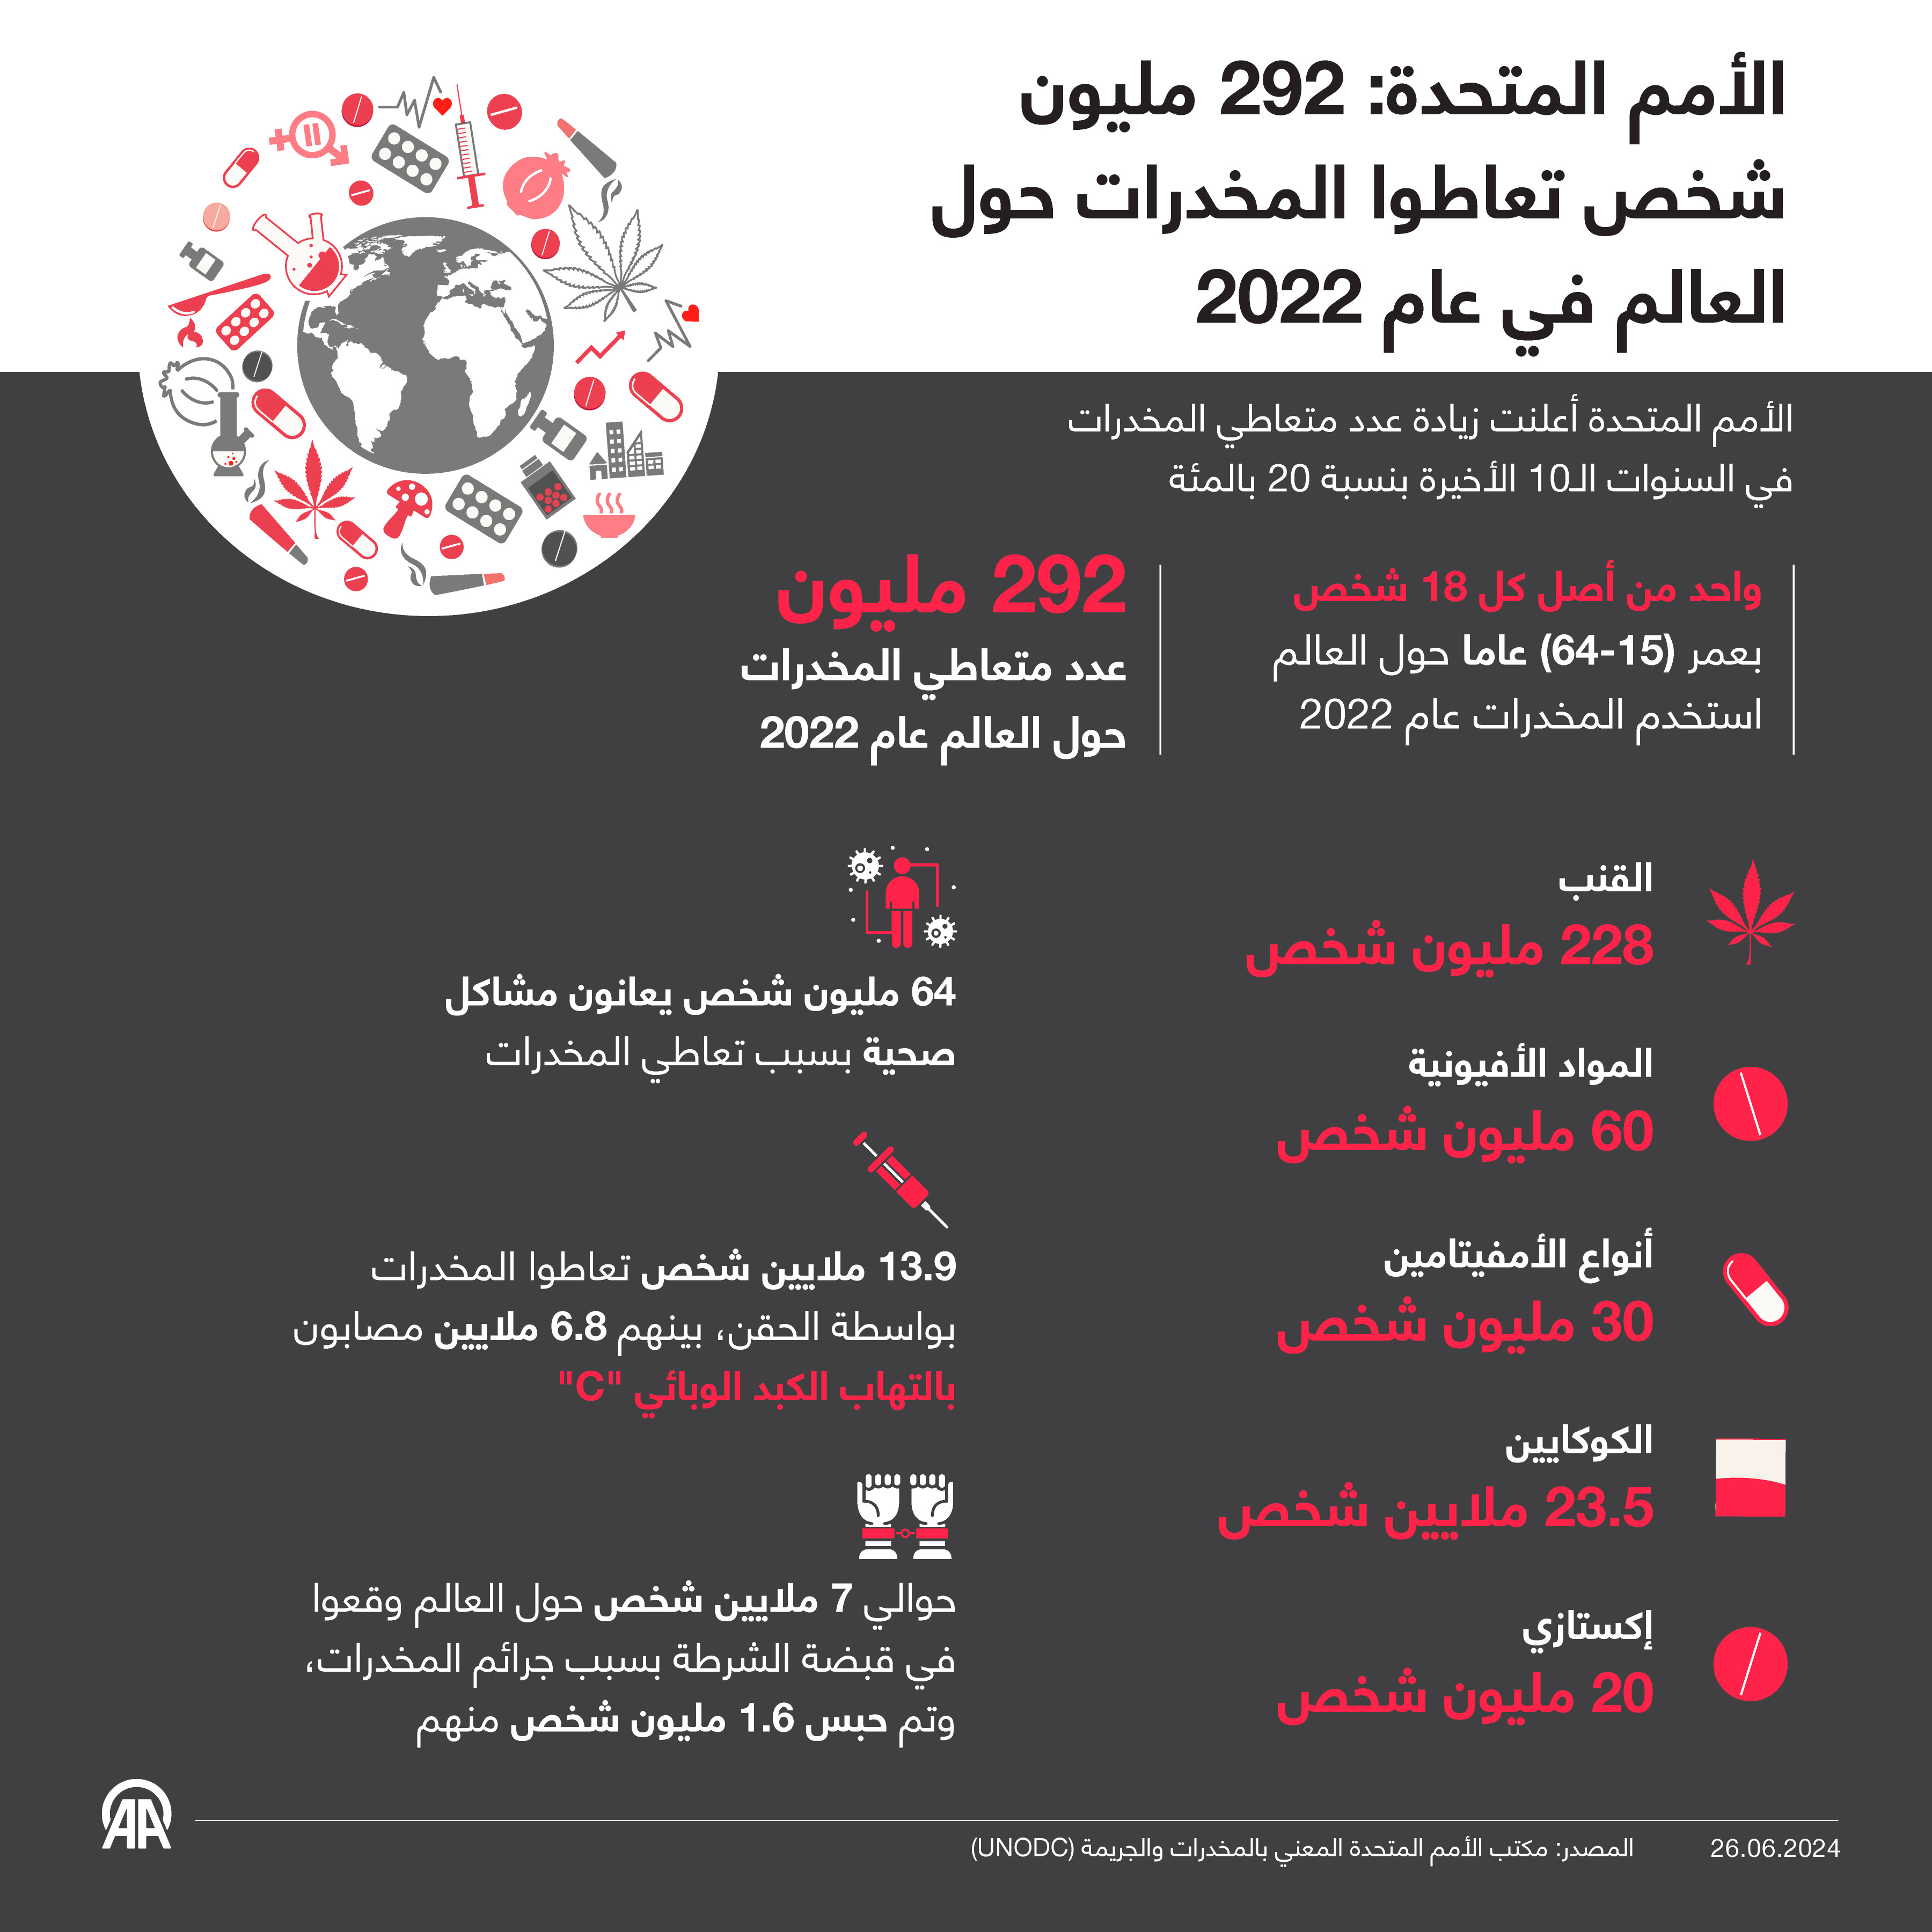 الأمم المتحدة: 292 مليون شخص تعاطوا المخدرات حول العالم في عام 2022